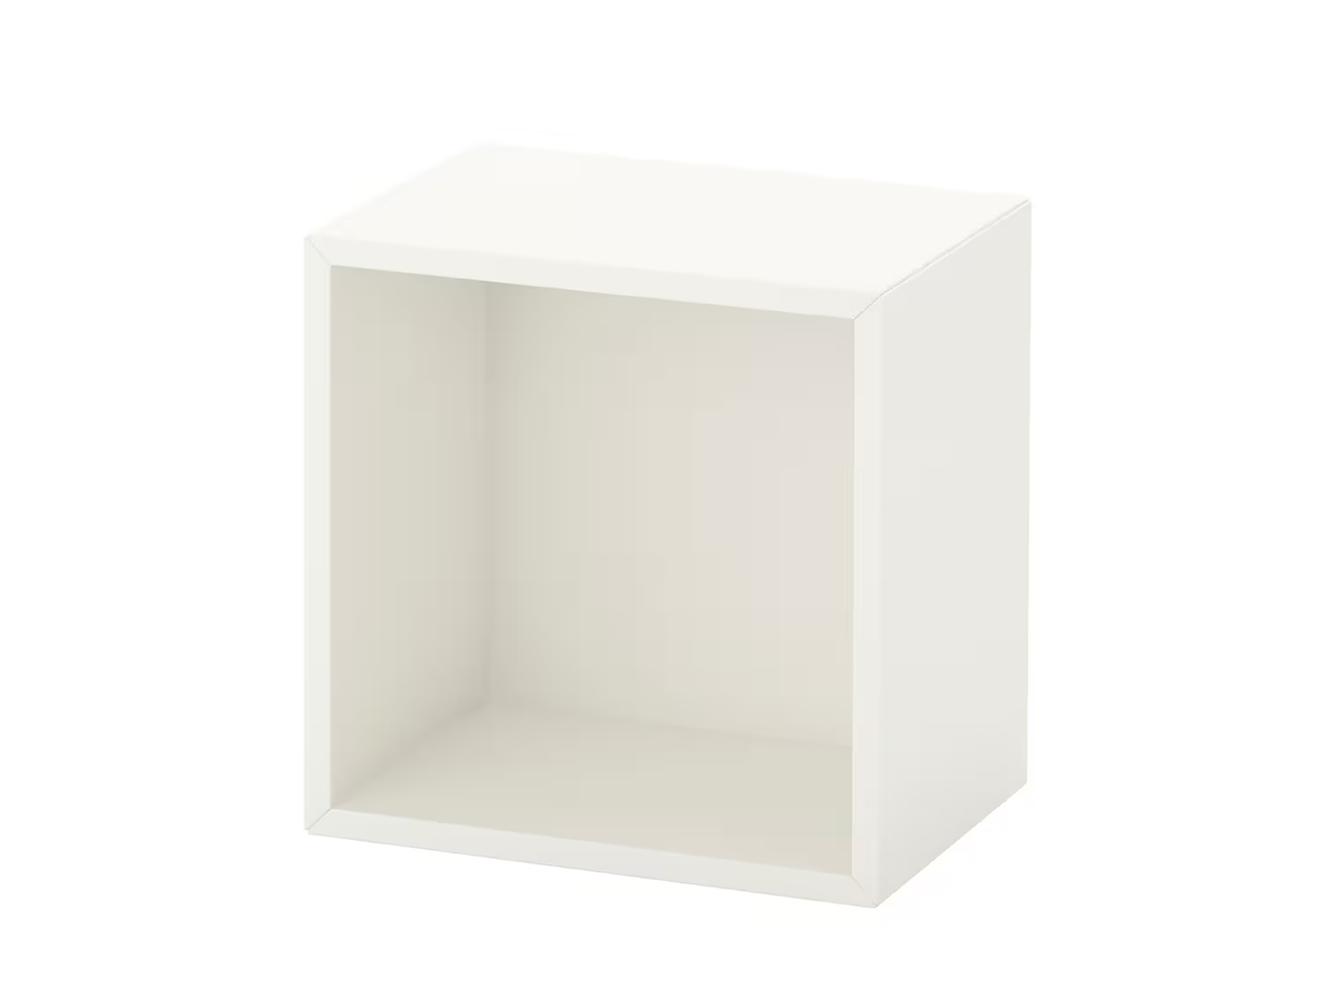 Экет 13 white ИКЕА (IKEA) изображение товара